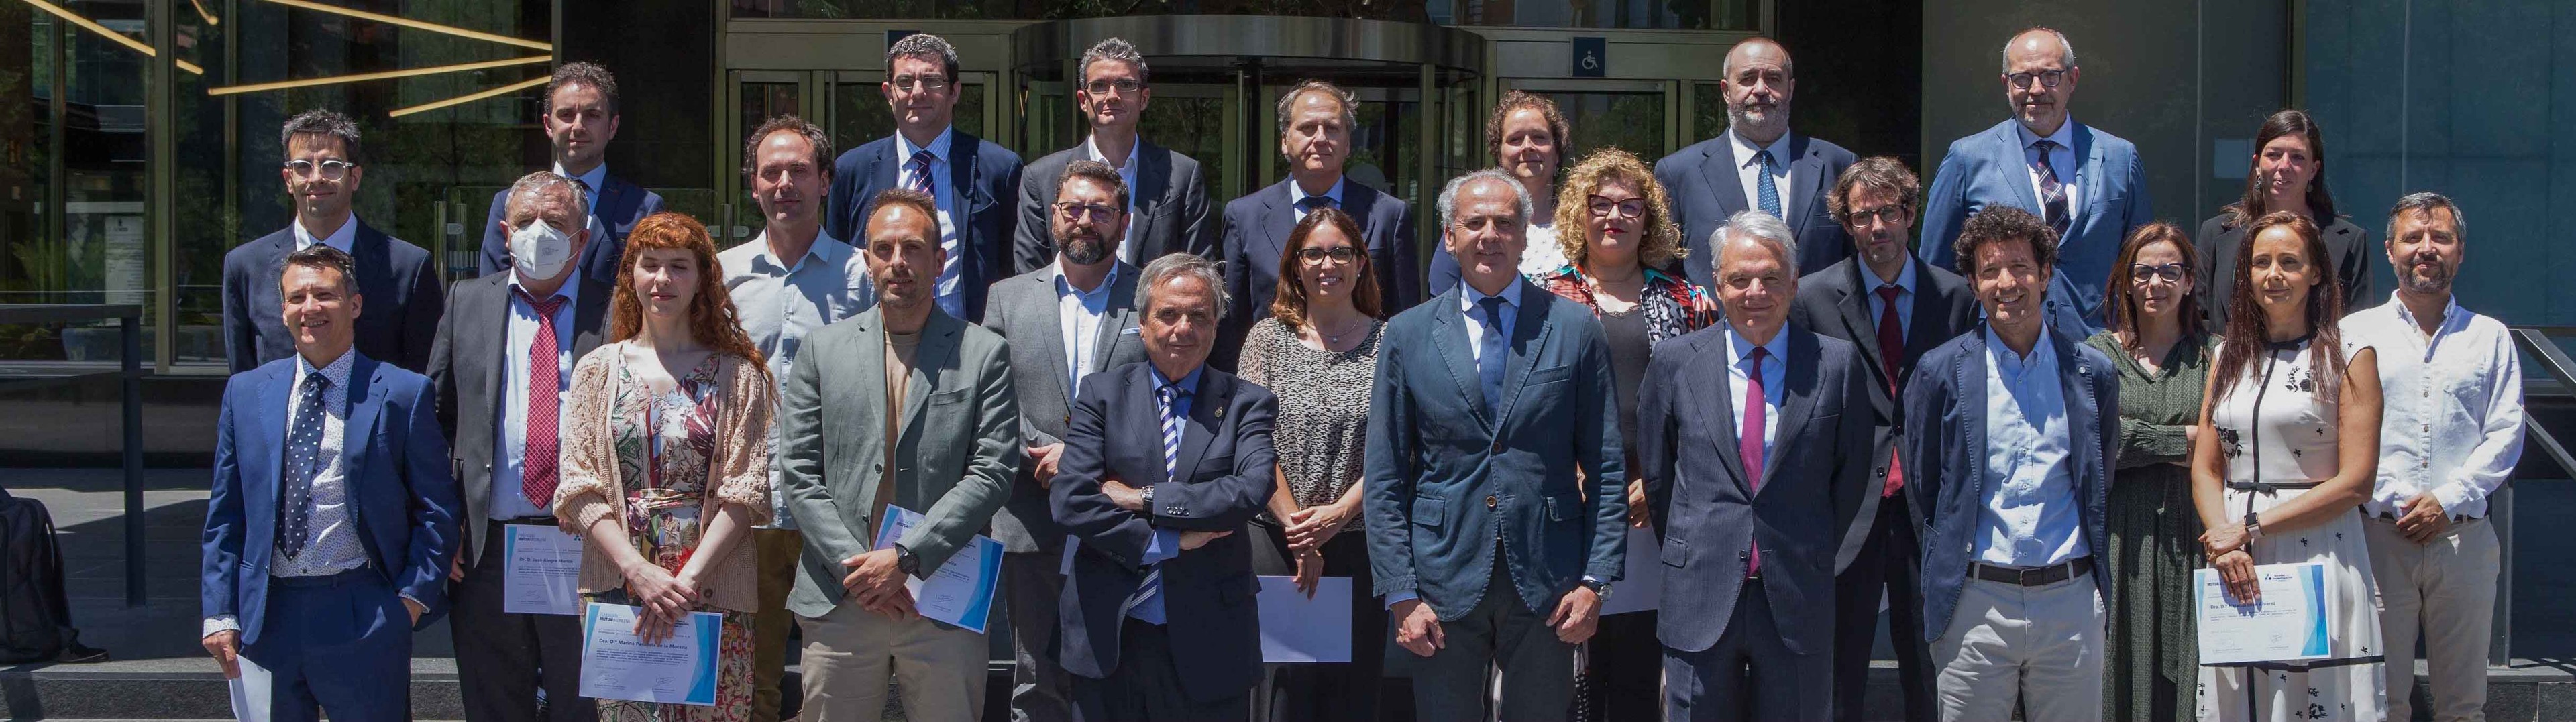 Fundación Mutua apoya la investigación médica en España con dos millones de euros